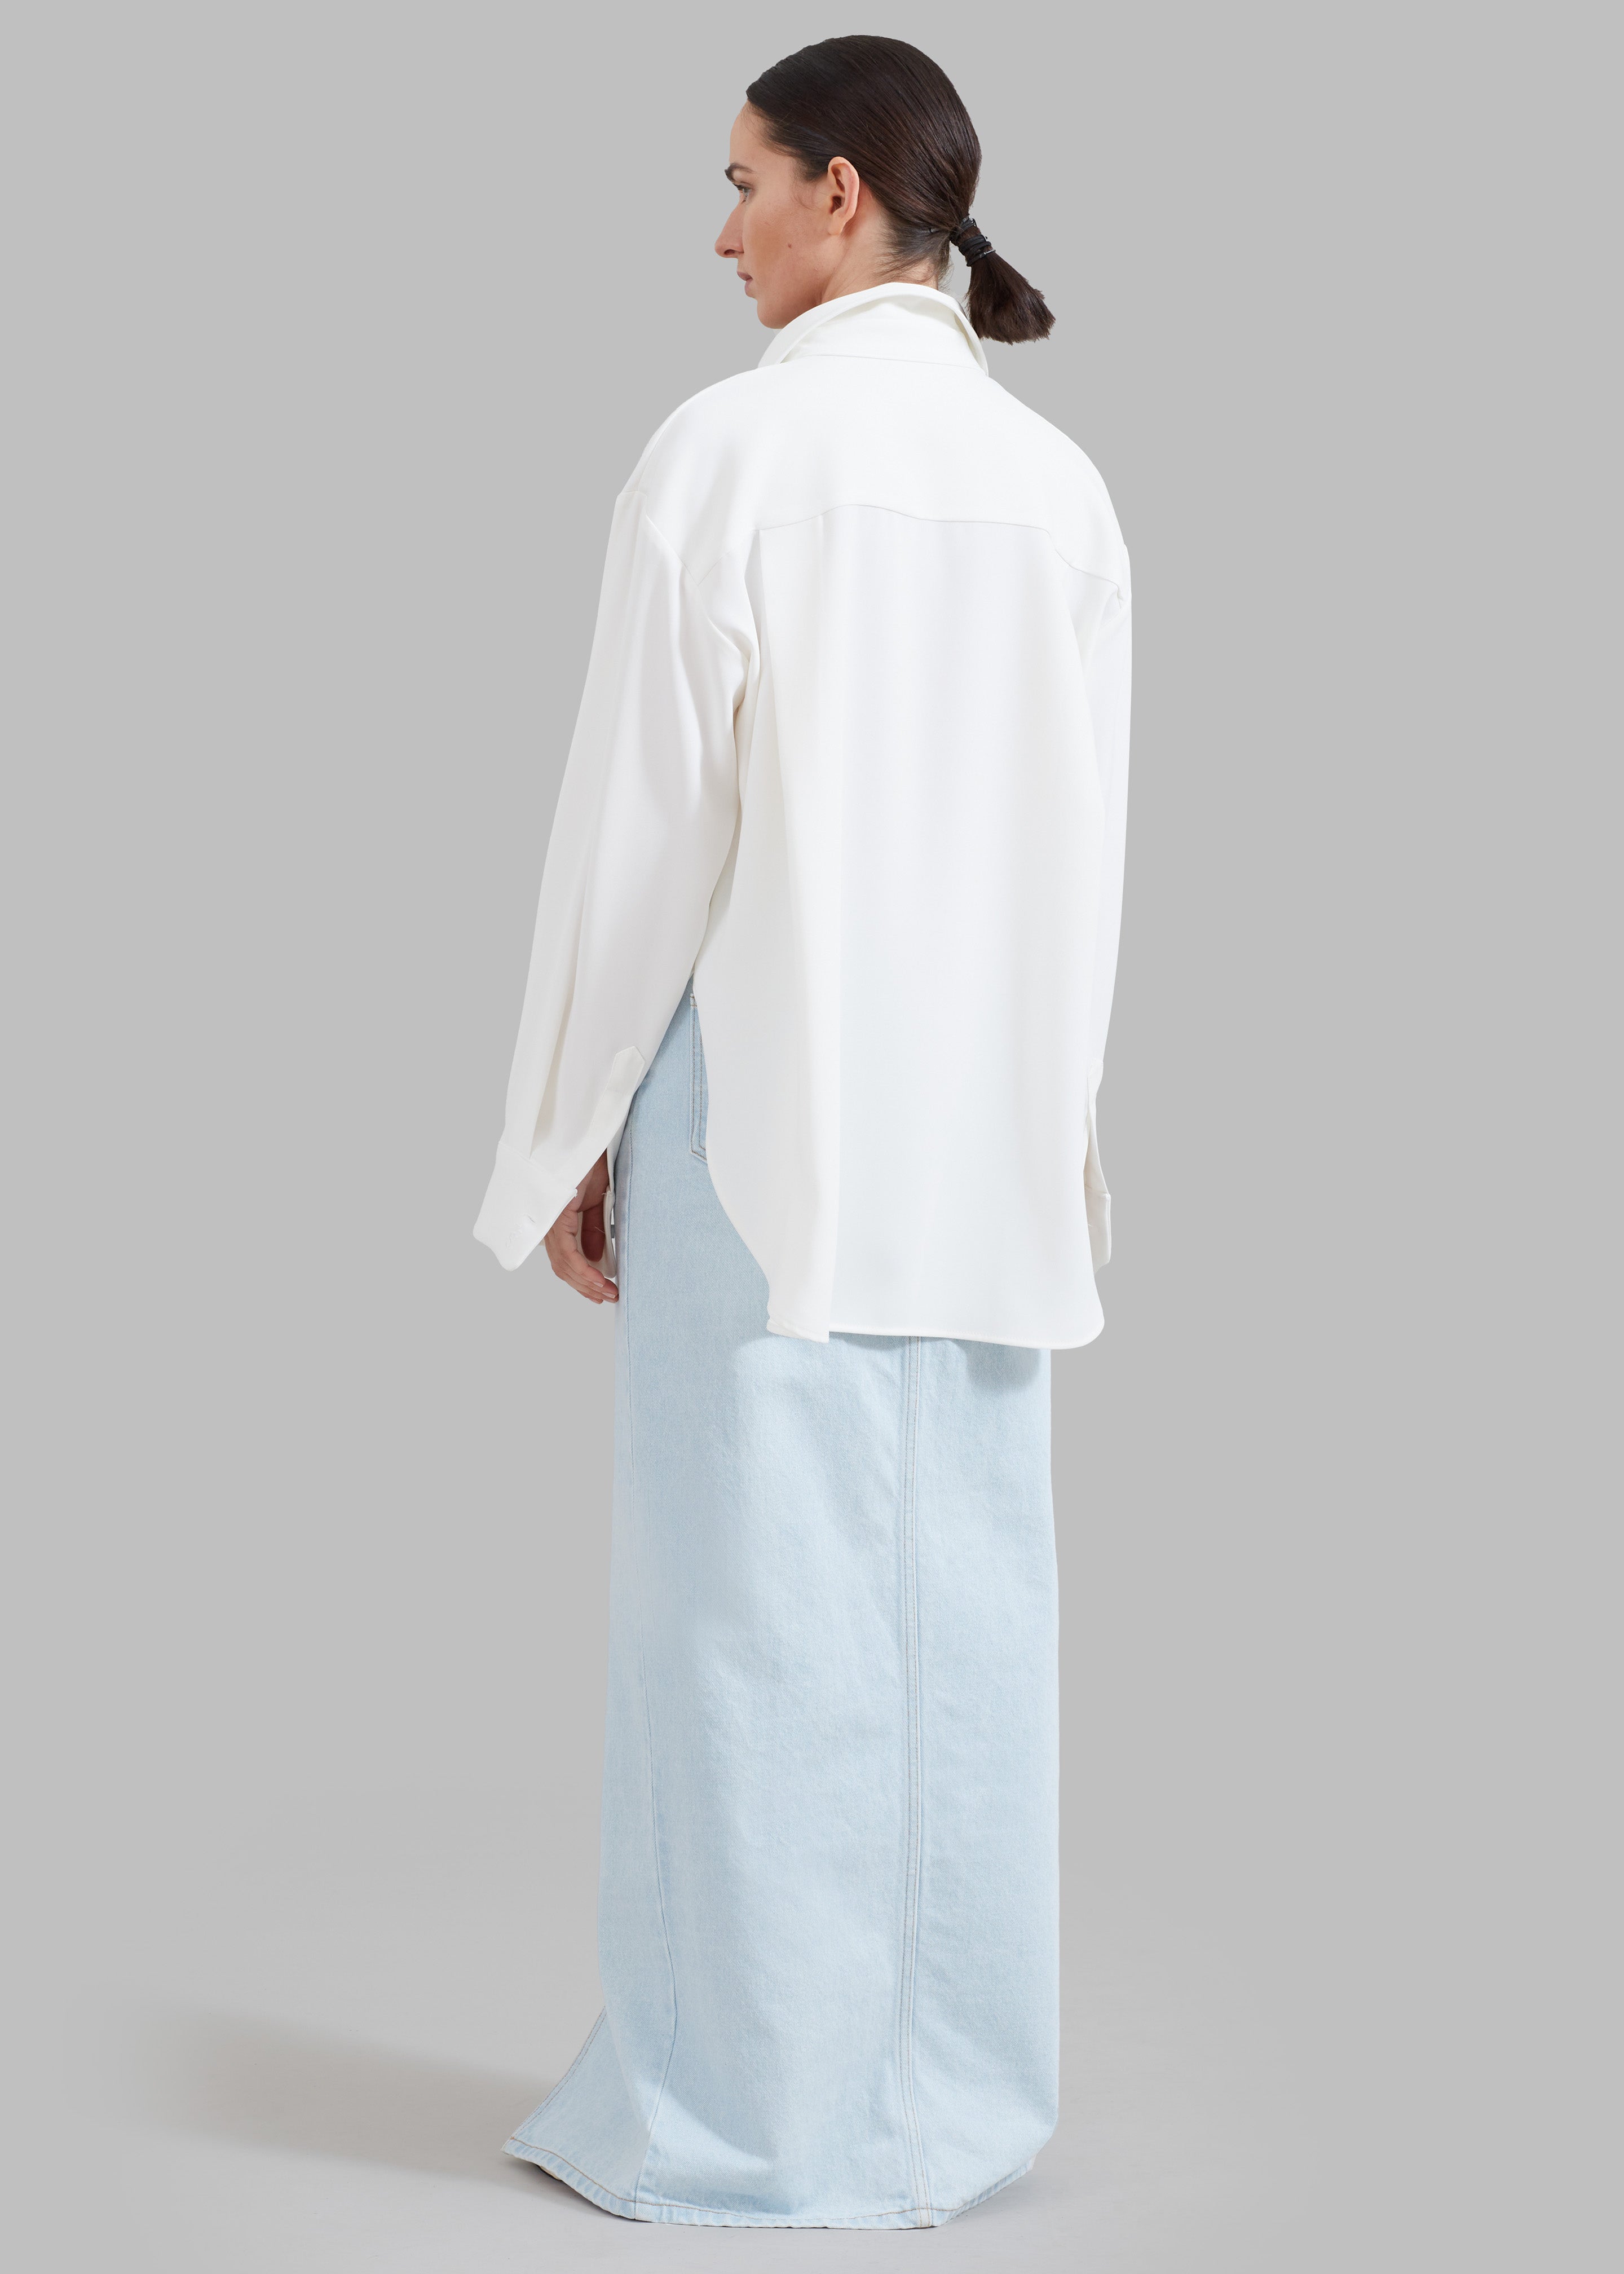 Macie Pocket Shirt - Ivory - 9